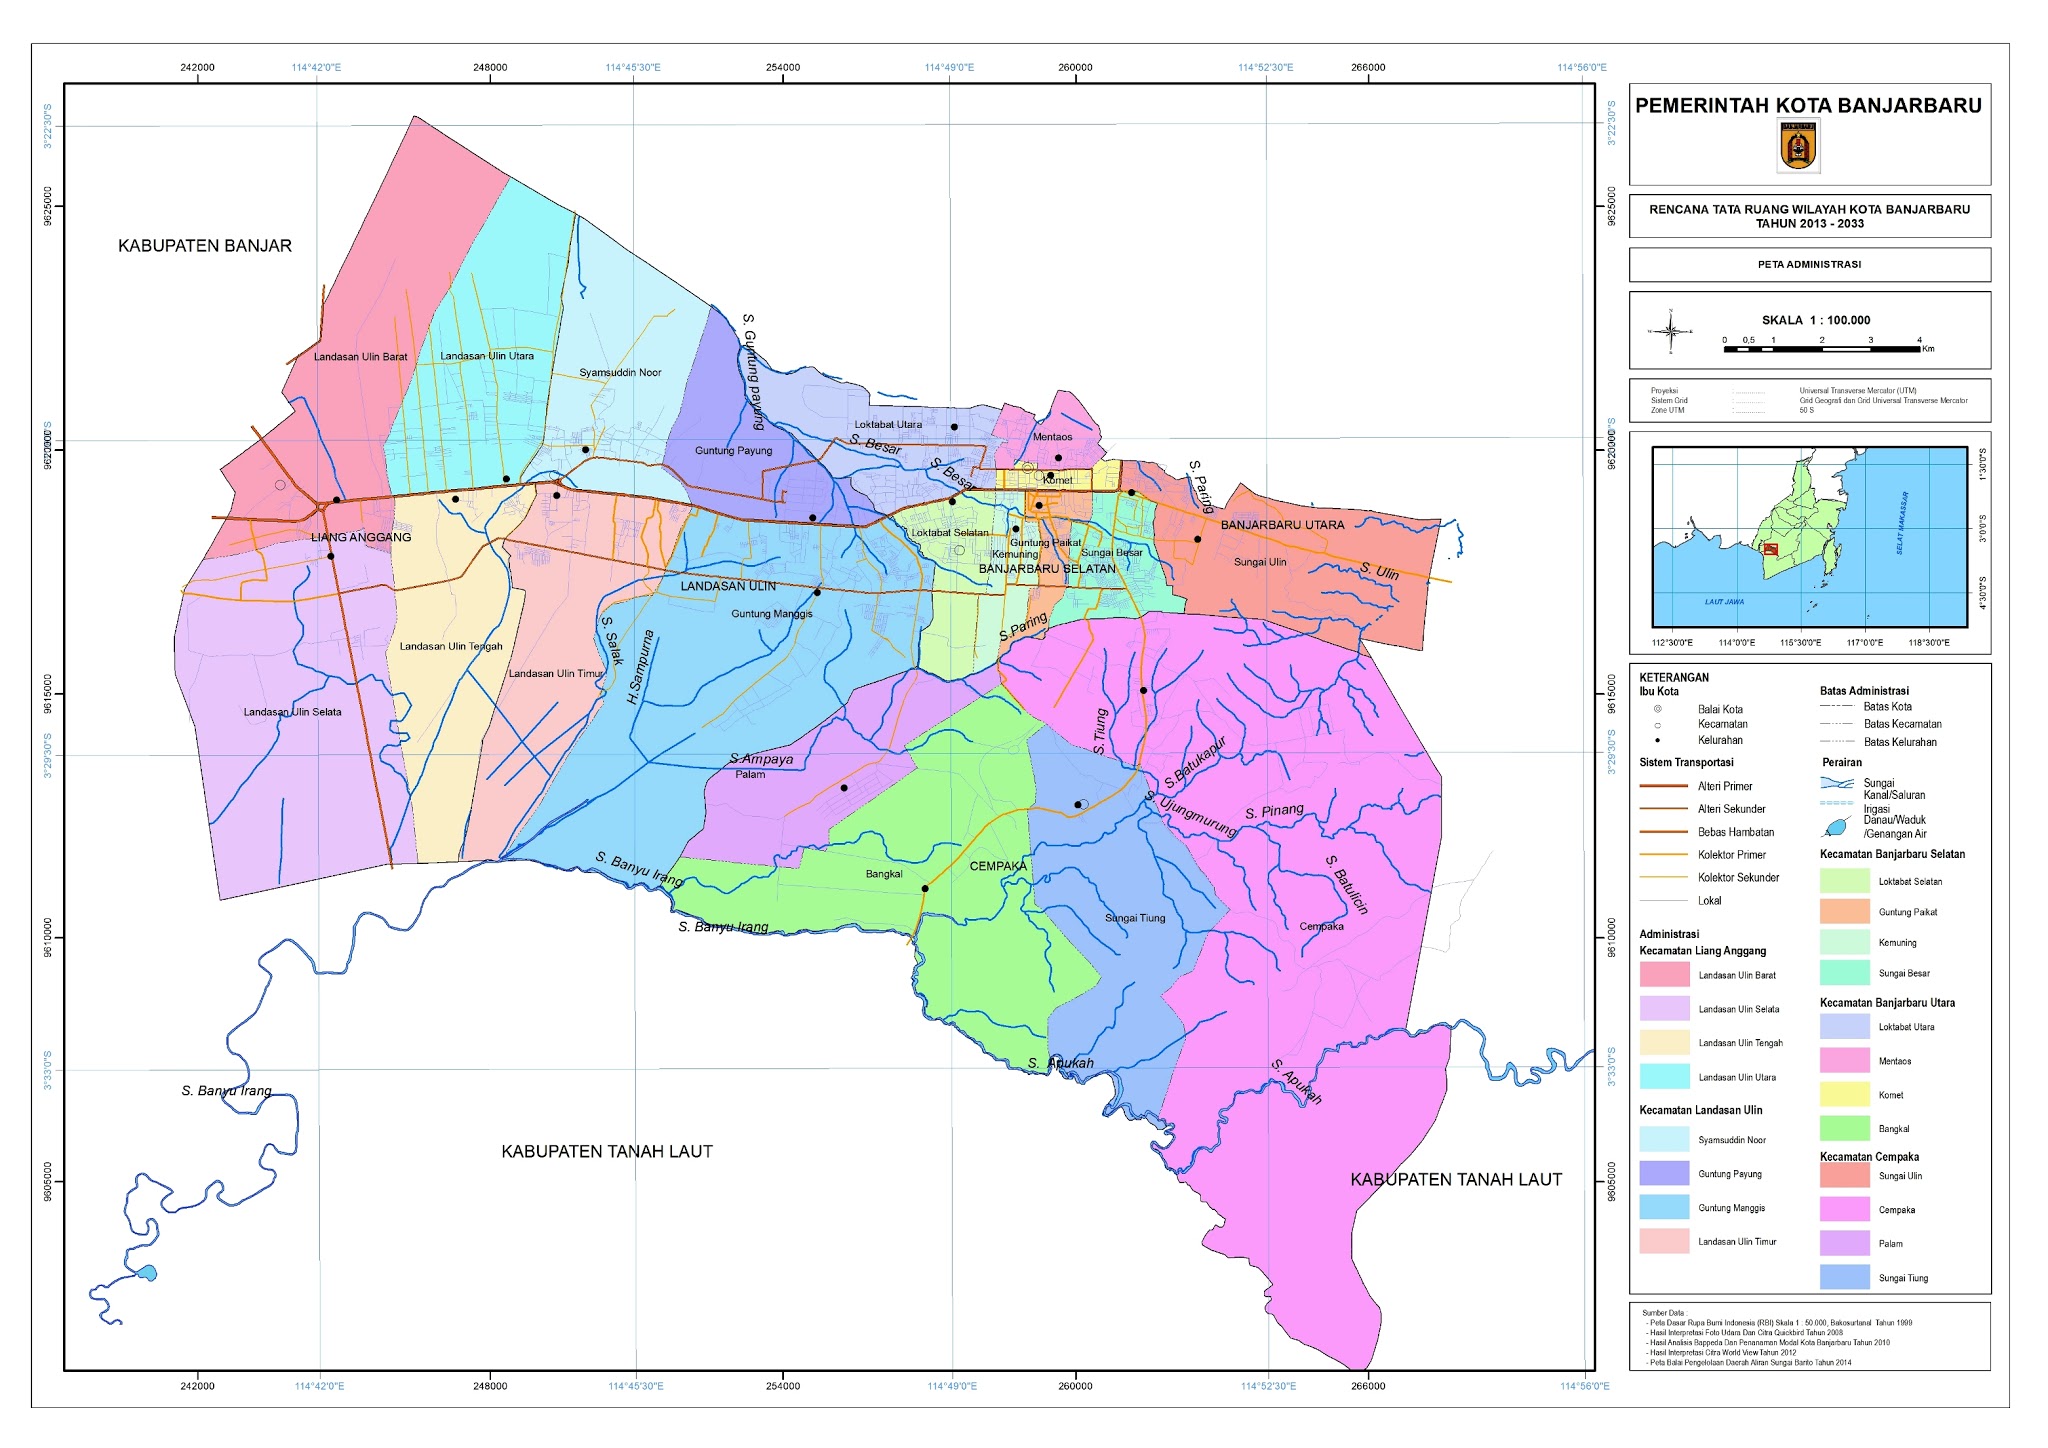 Peta Kota: Peta Kota Banjarbaru